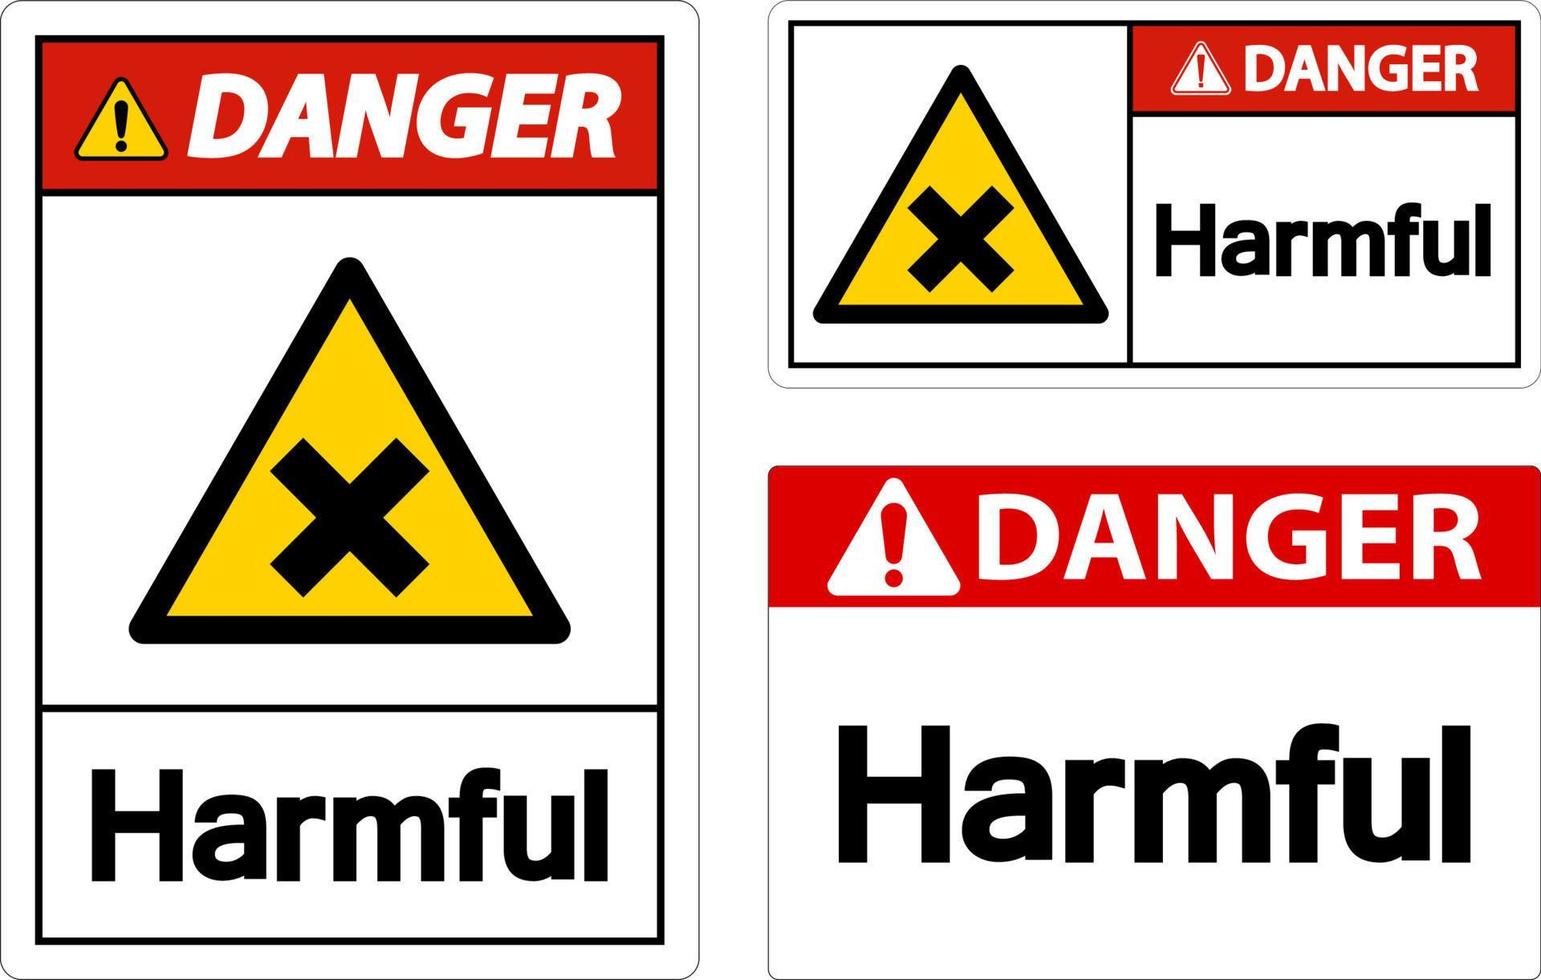 Harmful Danger Sign On White Background vector